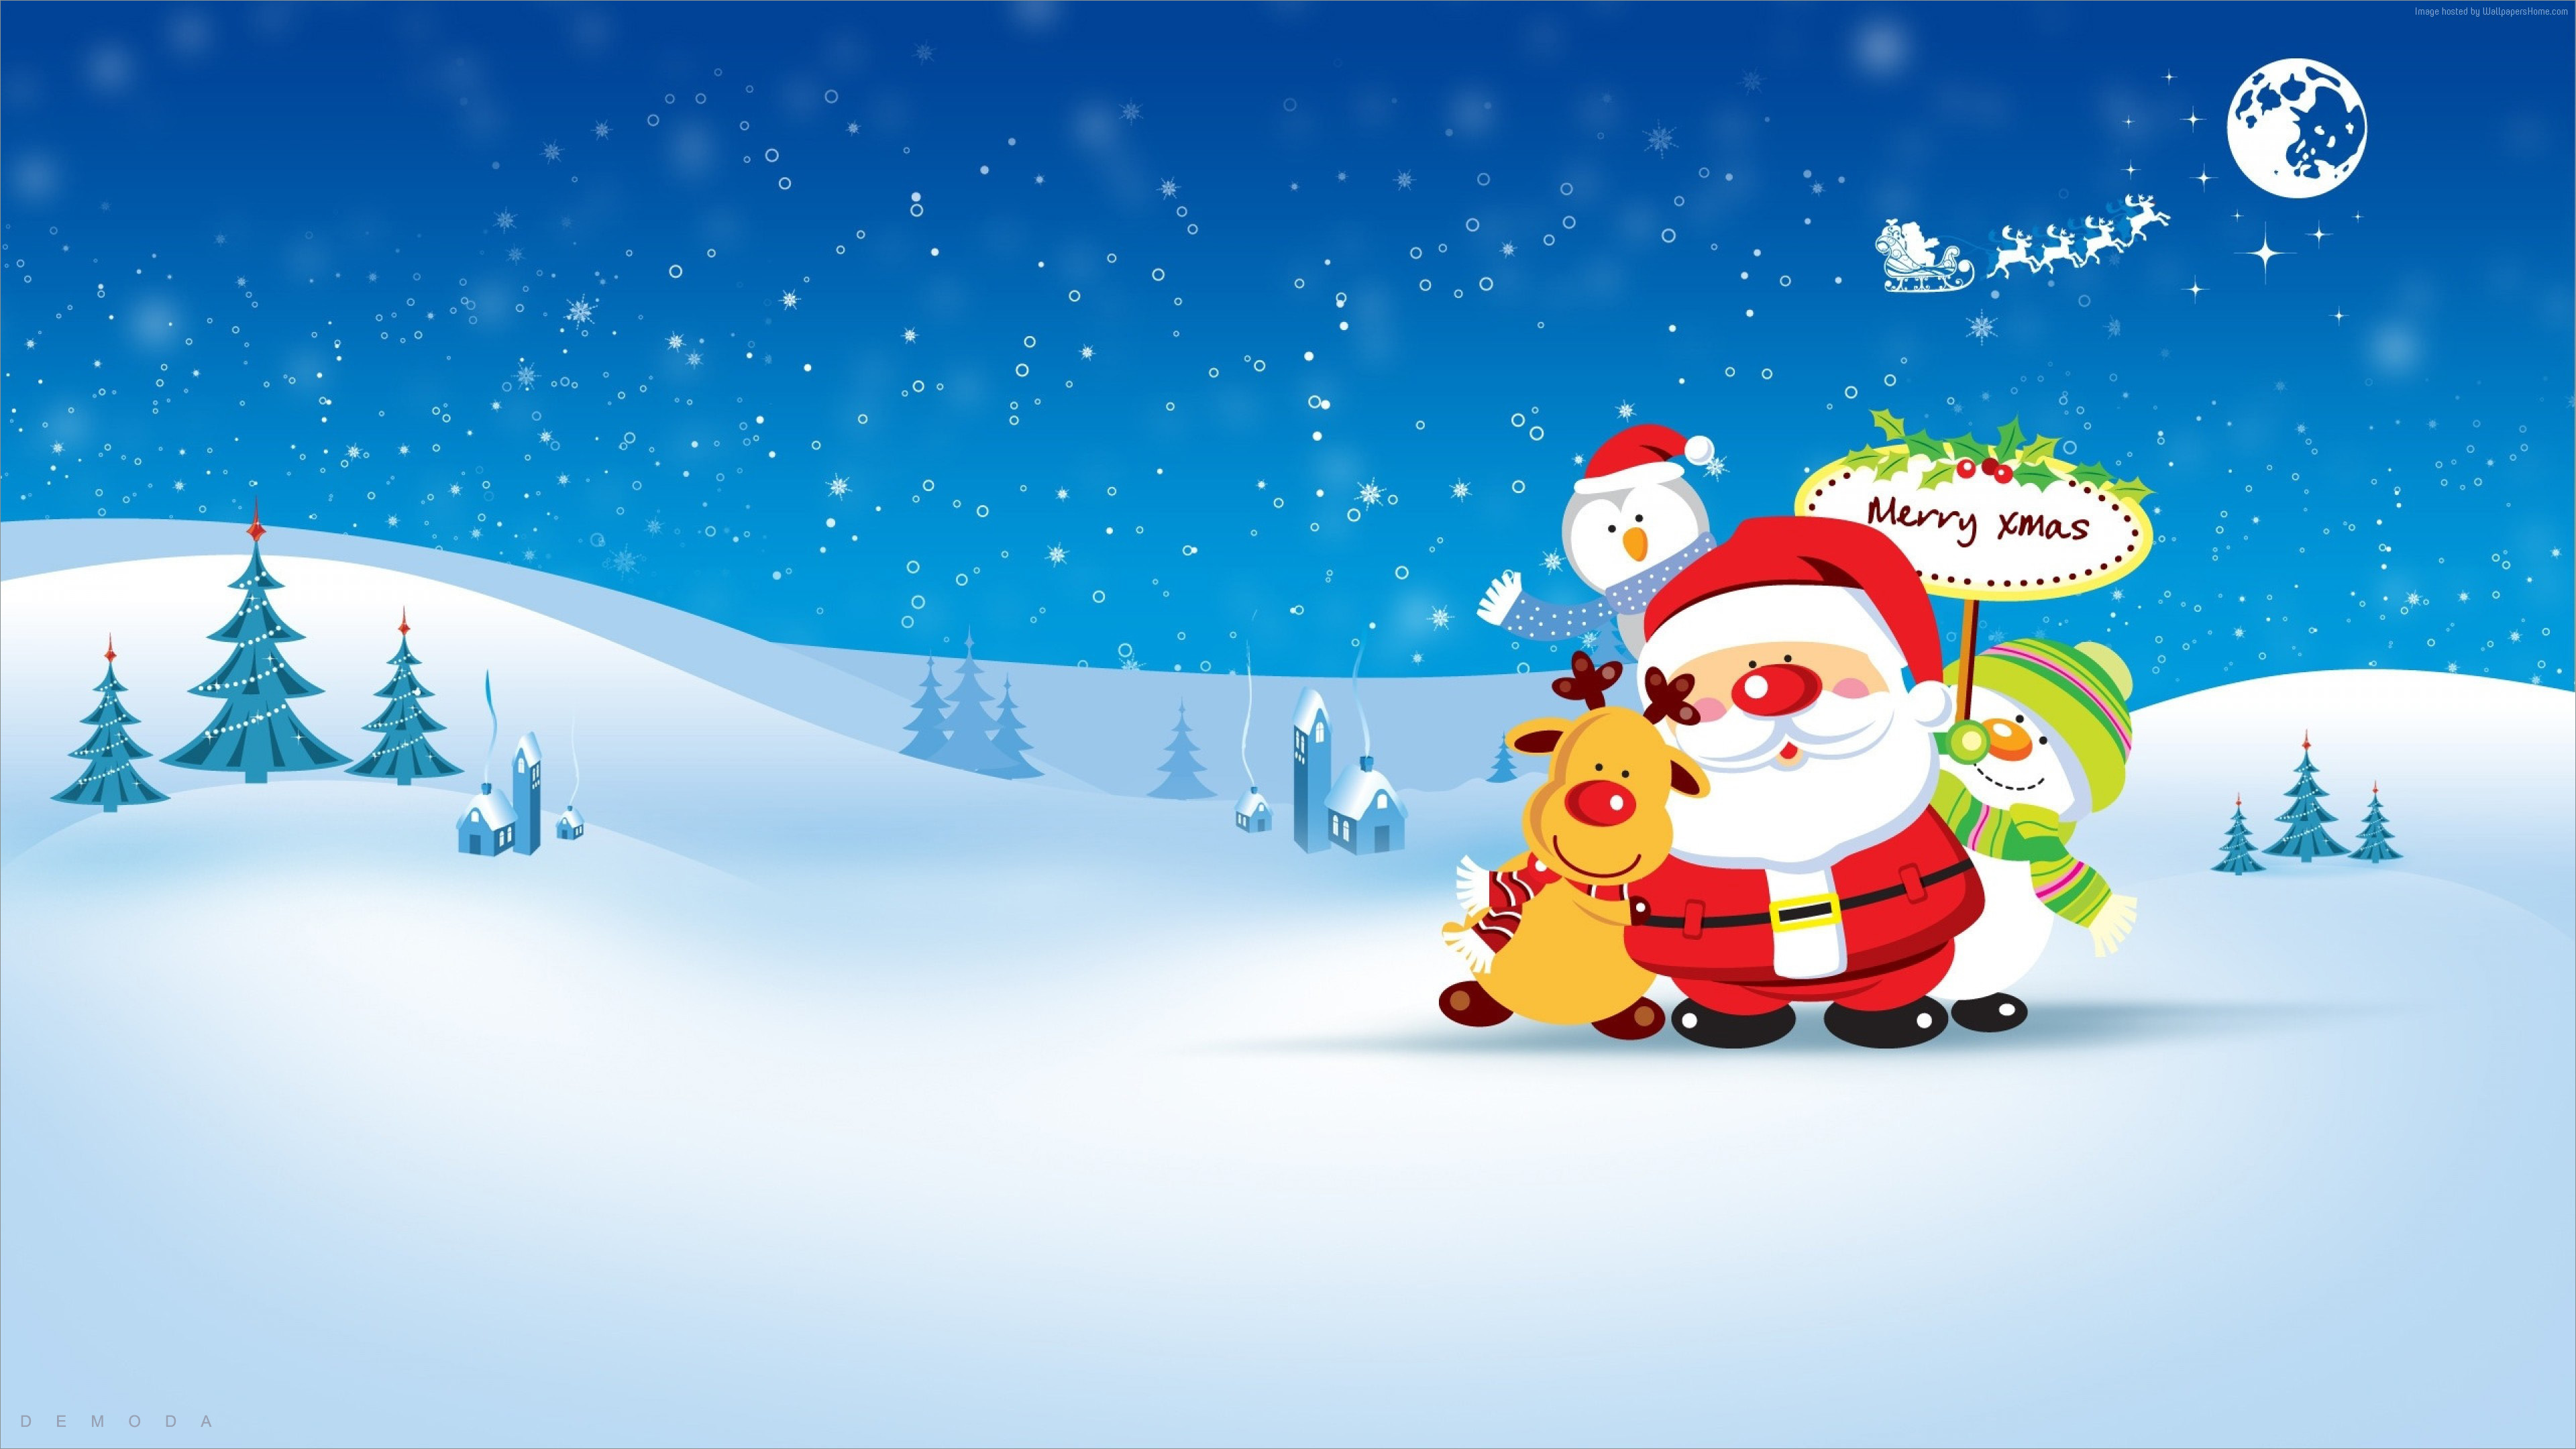 Hình Ảnh Chúc Mừng Giáng Sinh Đẹp - Ảnh Noel Đẹp Nhất | St nicholas day,  Jolly, Holidays and events